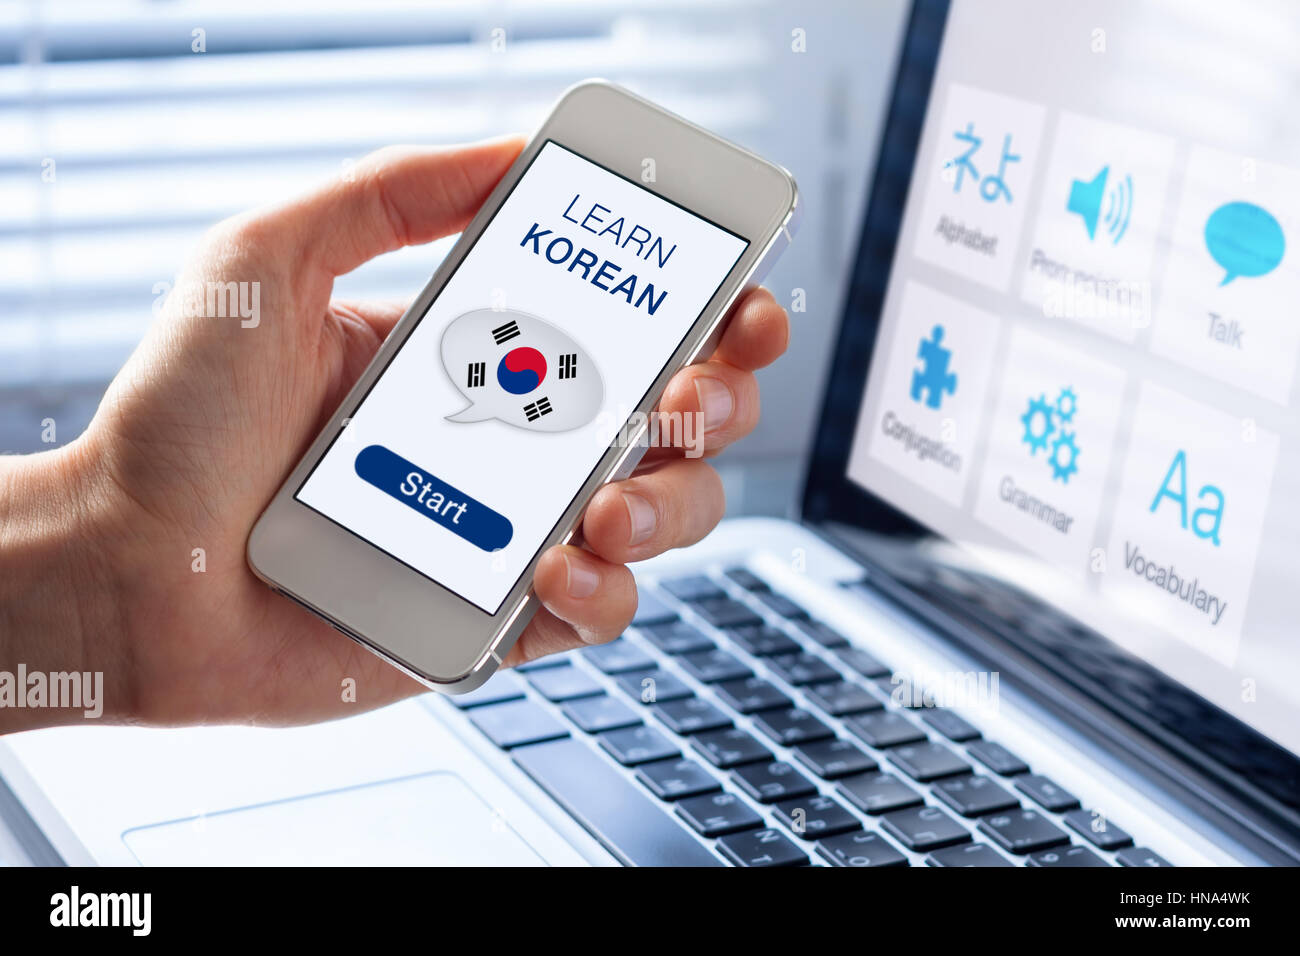 Apprendre le coréen en ligne langue concept avec une personne montrant l'e-learning application sur téléphone mobile avec le drapeau de la Corée du Sud Banque D'Images